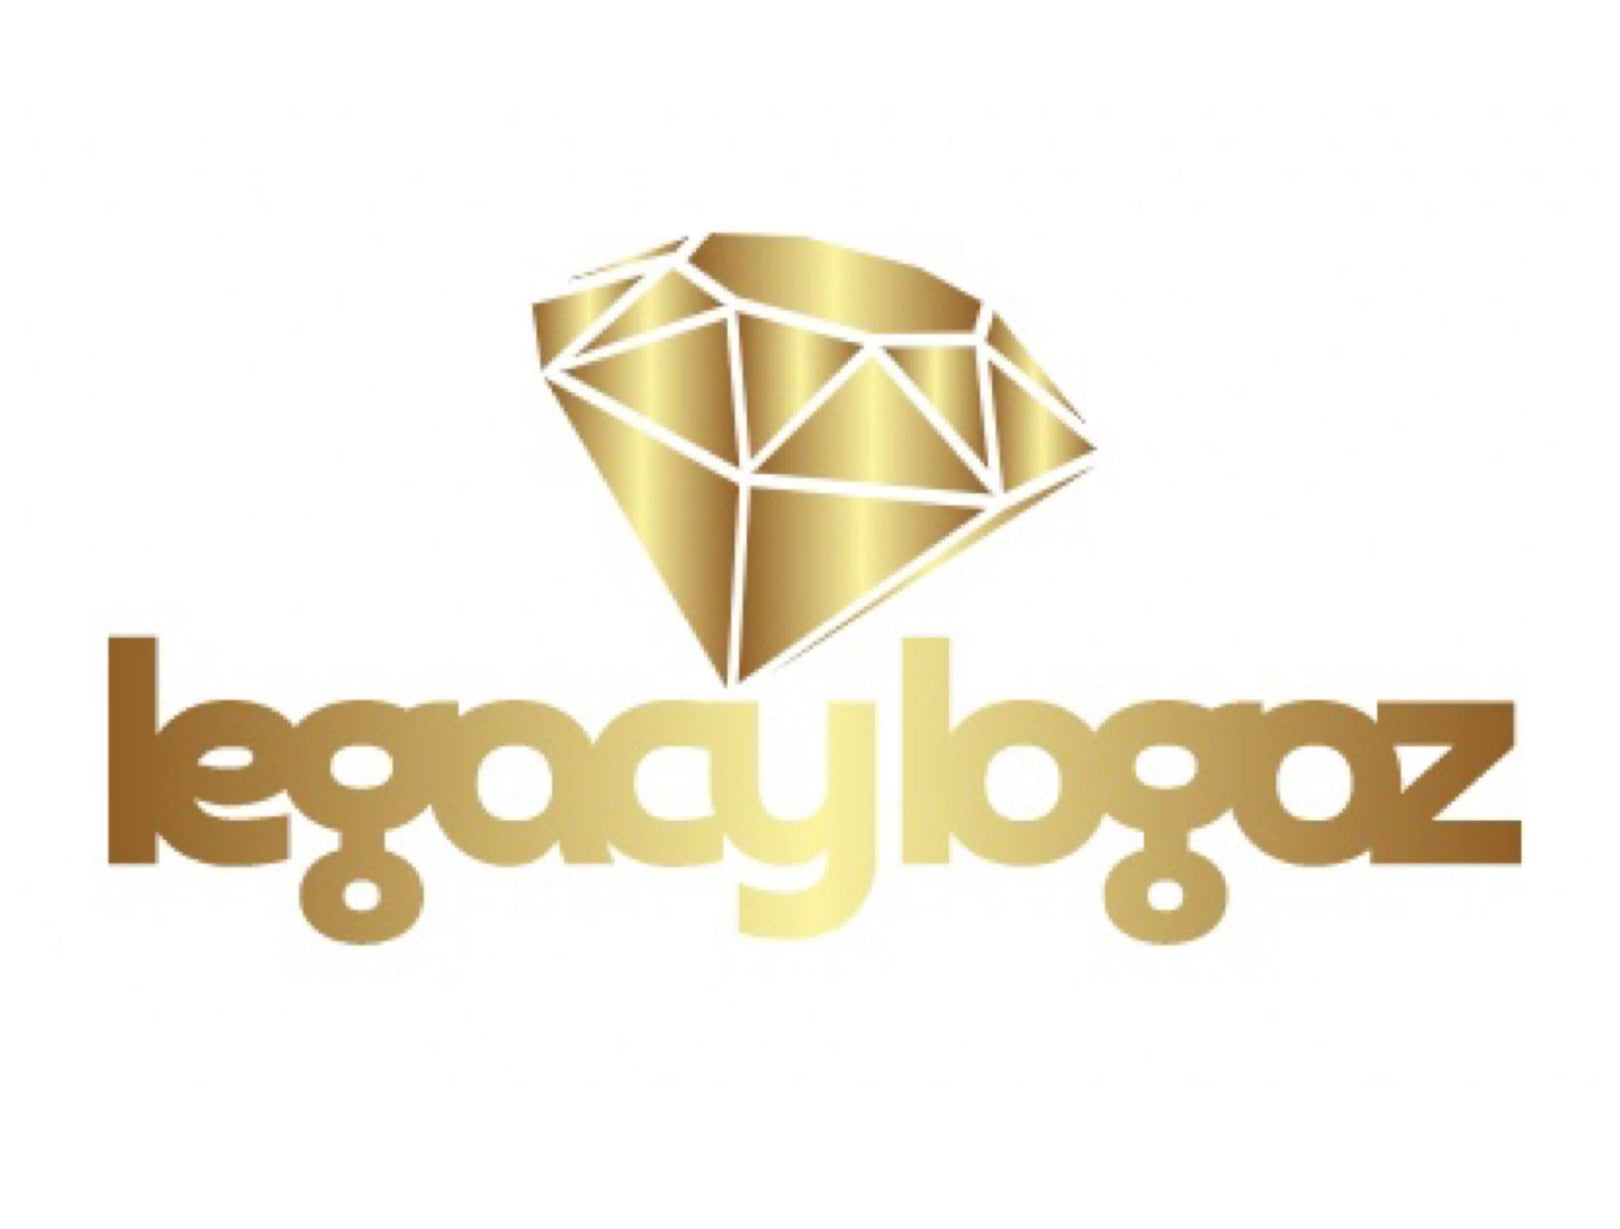 Legacy Logoz